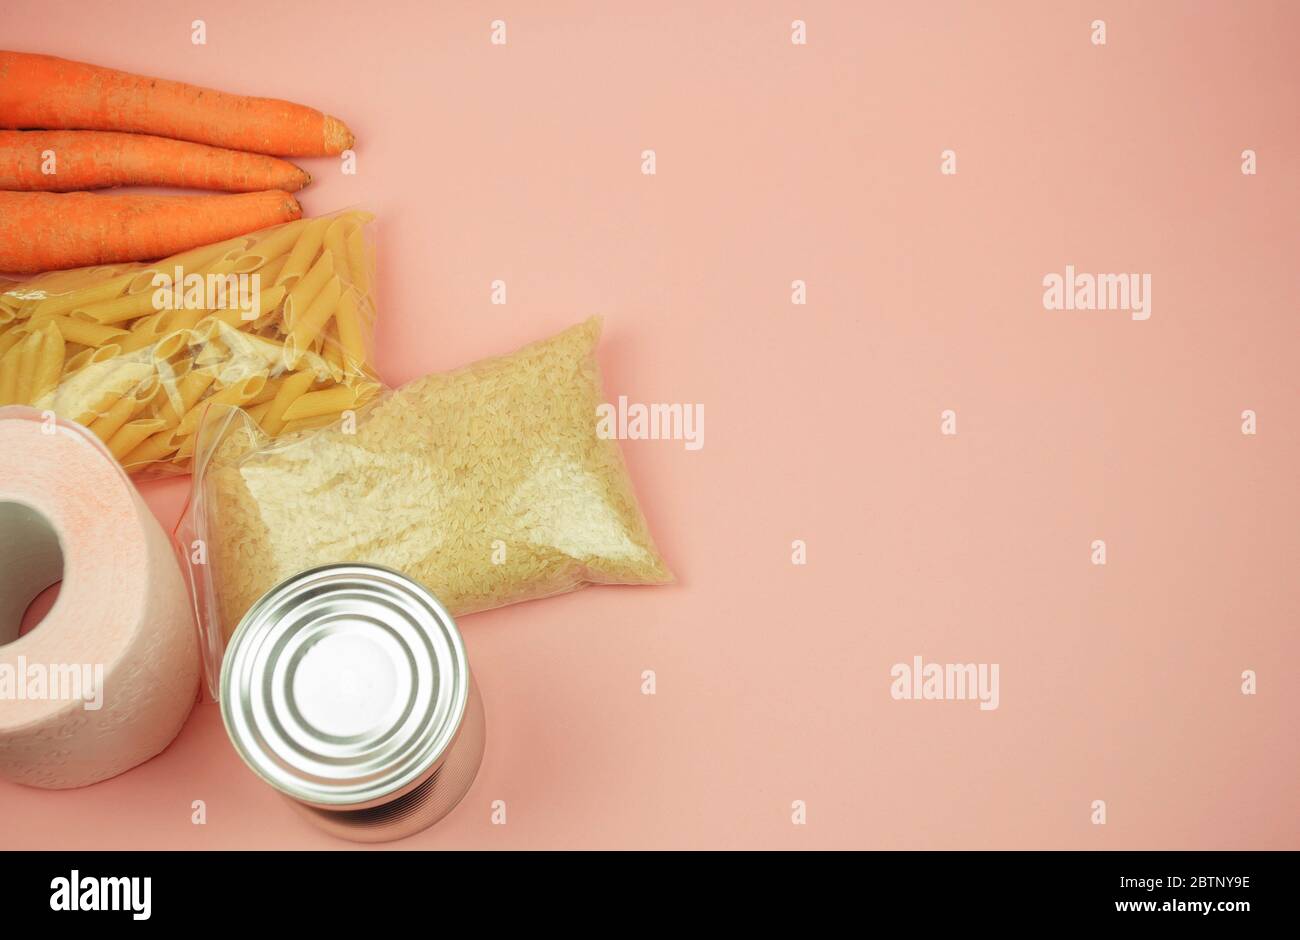 Lebensmittelversorgung Quarantäne Nahrungsmittelkrise isoliert auf rosa Hintergrund. Reis, Nudeln, Dosenfutter, Möhren, Toilettenpapier. Das Konzept der Lieferung von Lebensmitteln Stockfoto